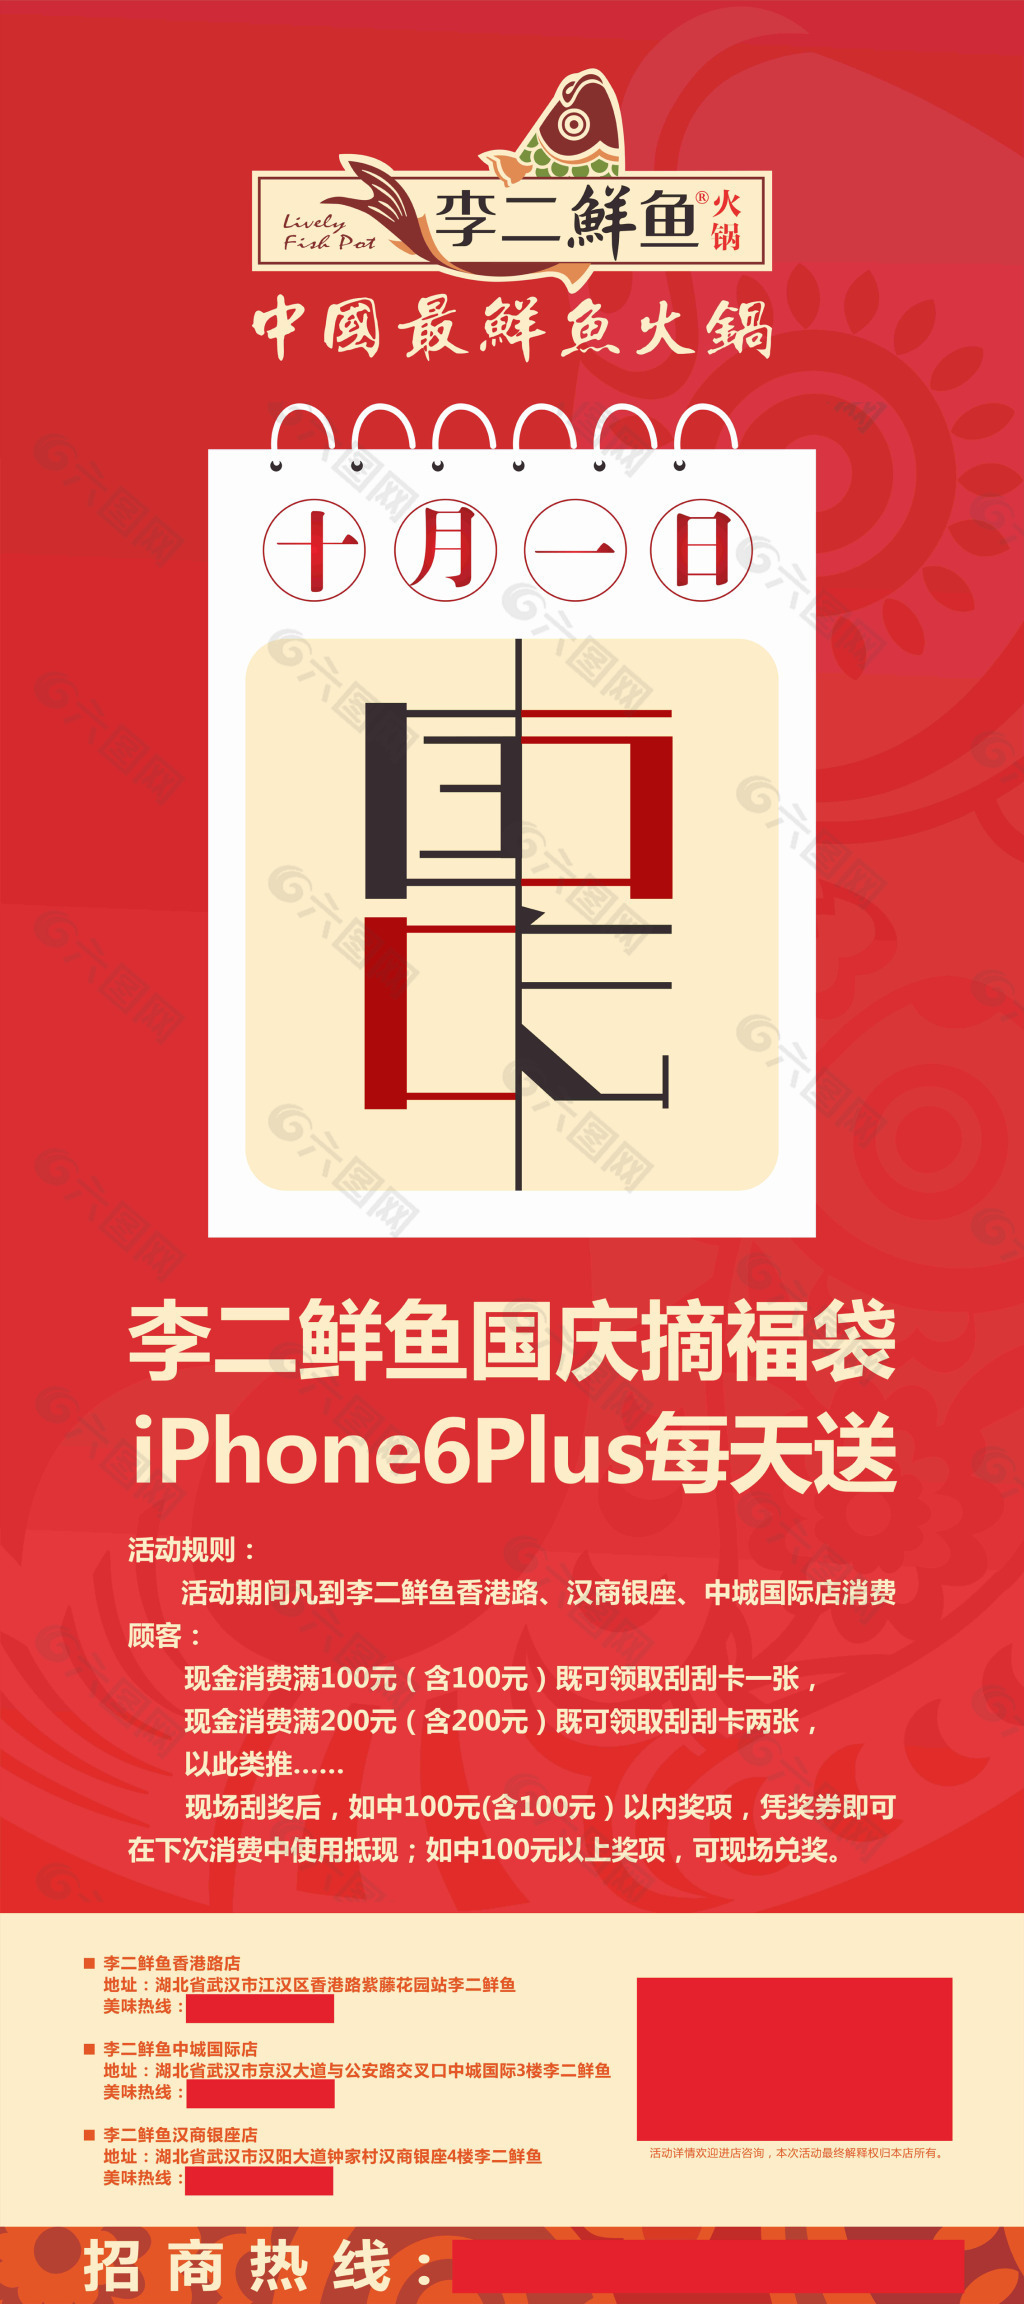 李二鱼村的充值海报平面广告素材免费下载(图片编号:4711594)-六图网